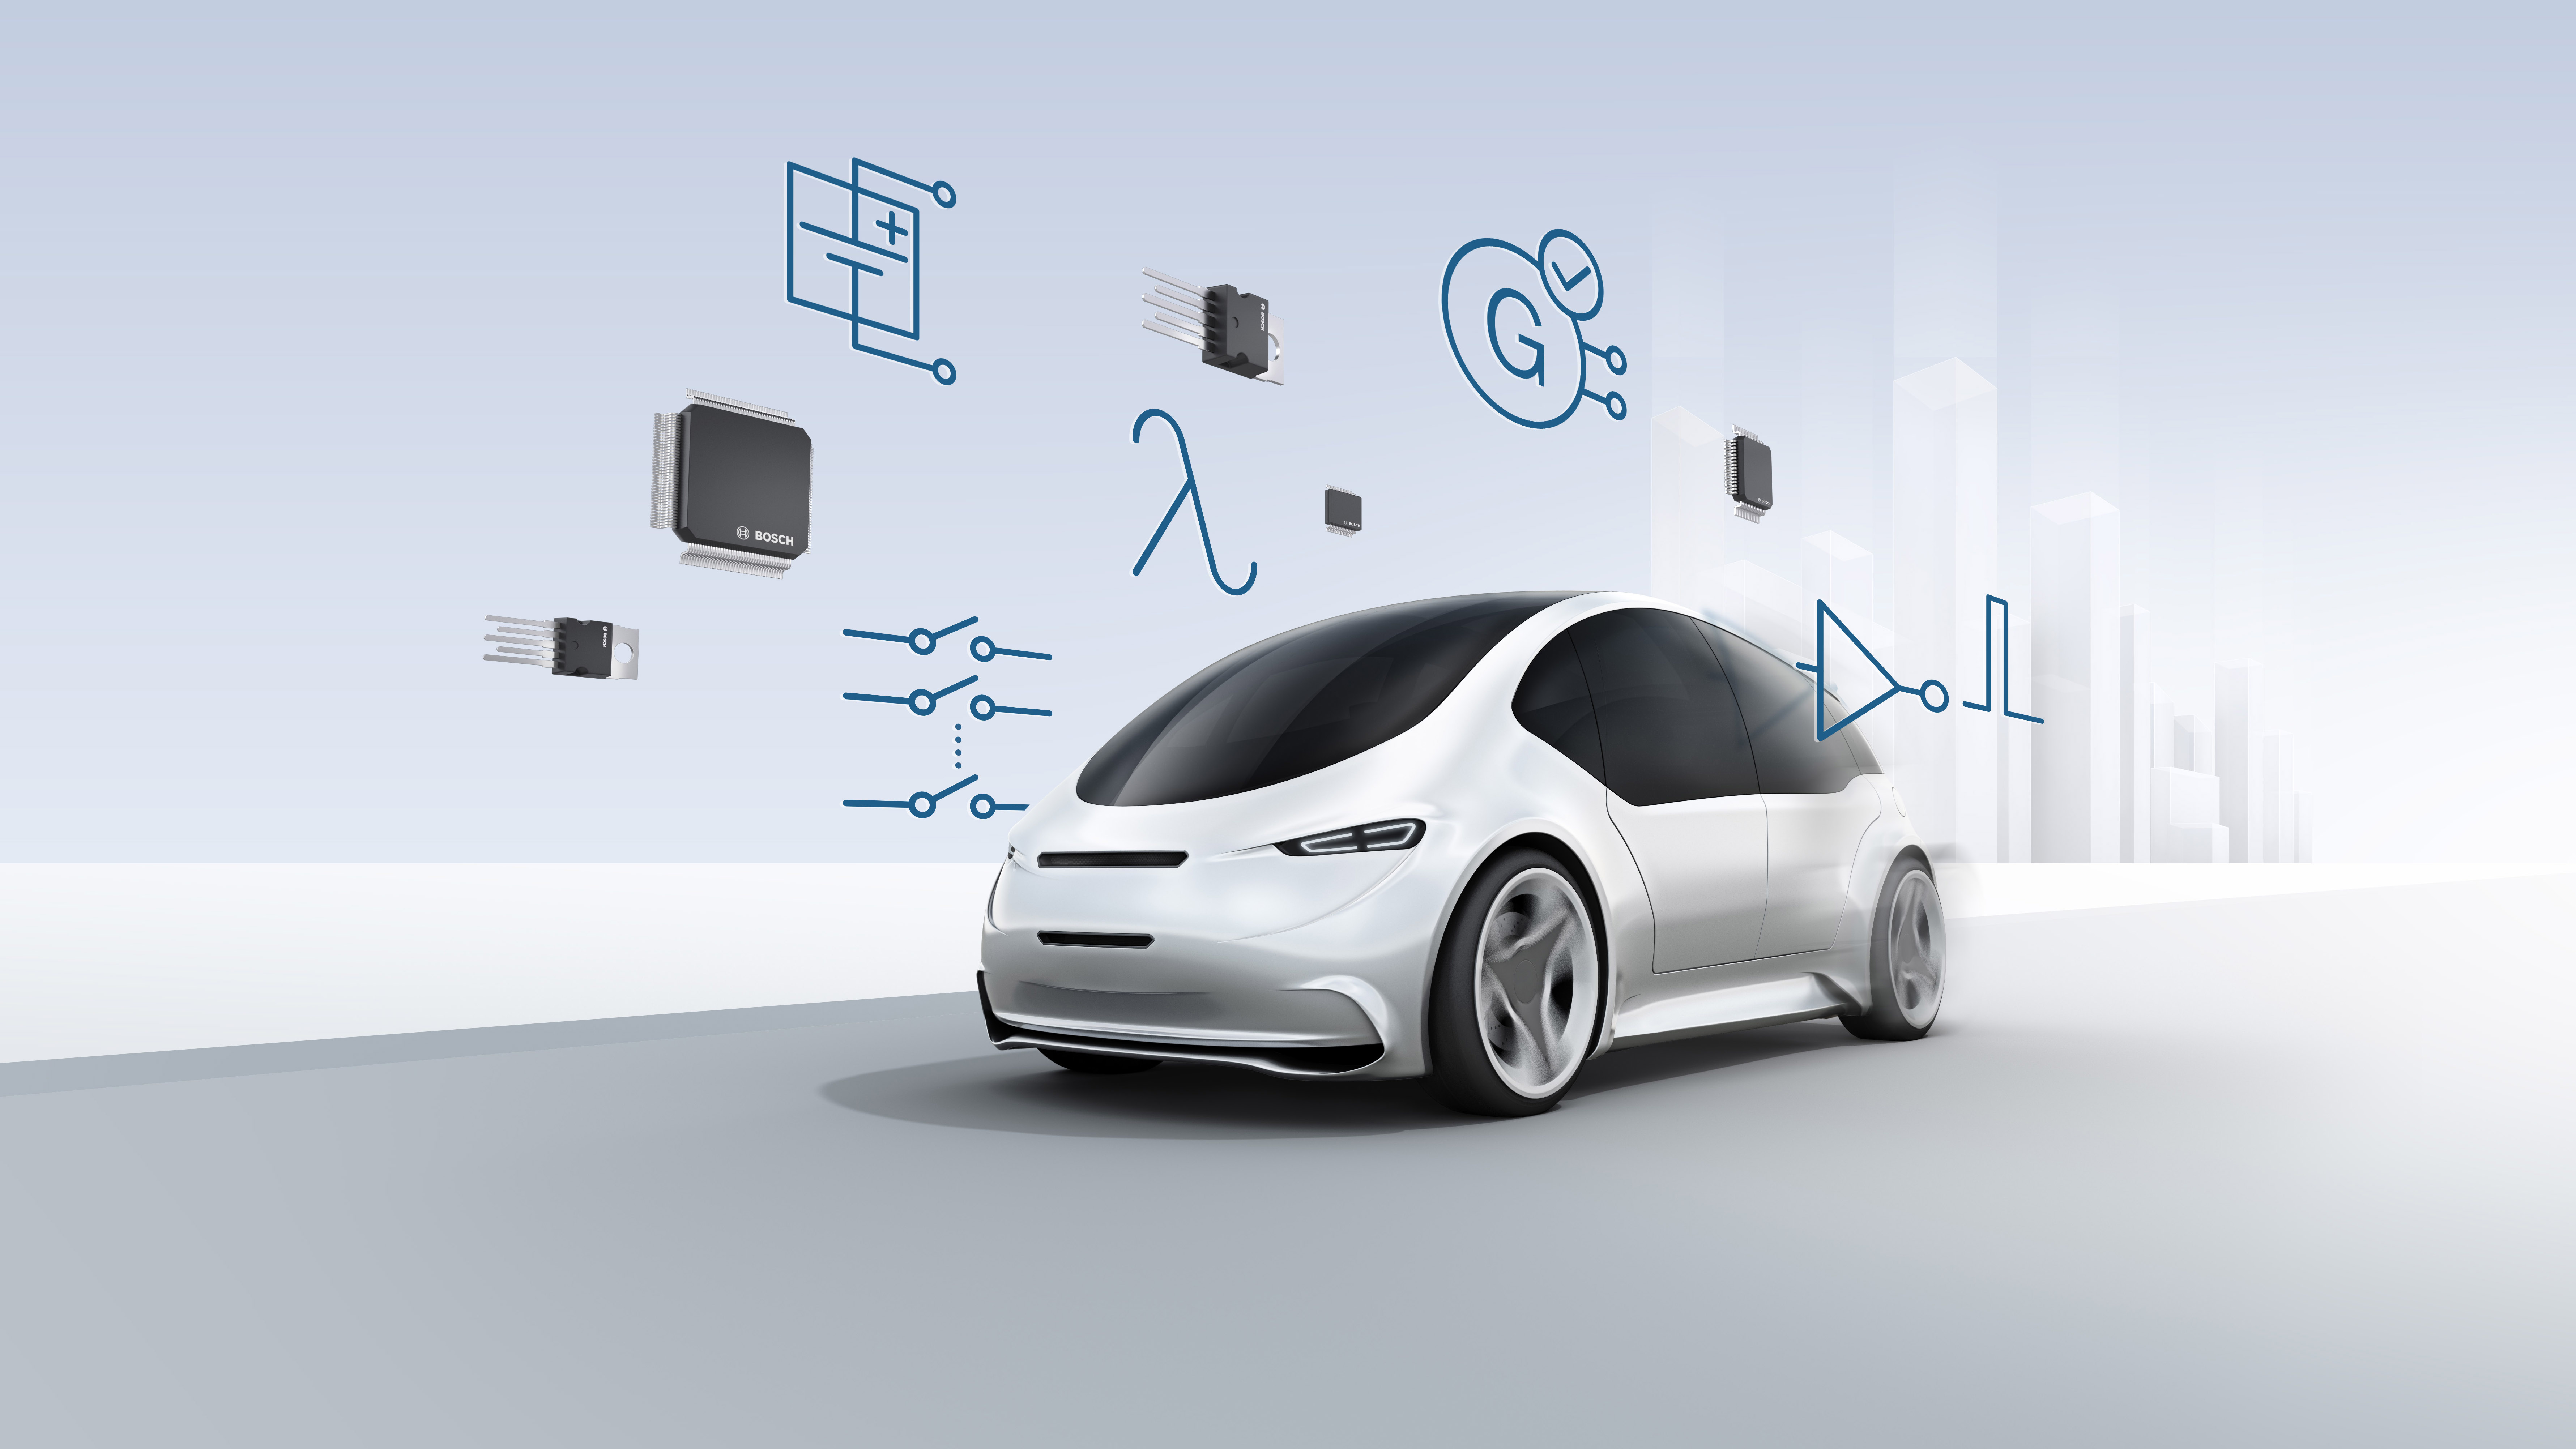 Bosch stellt auf der Electronica 2018 neue System-ICs für die Fahrzeugelektronik vor